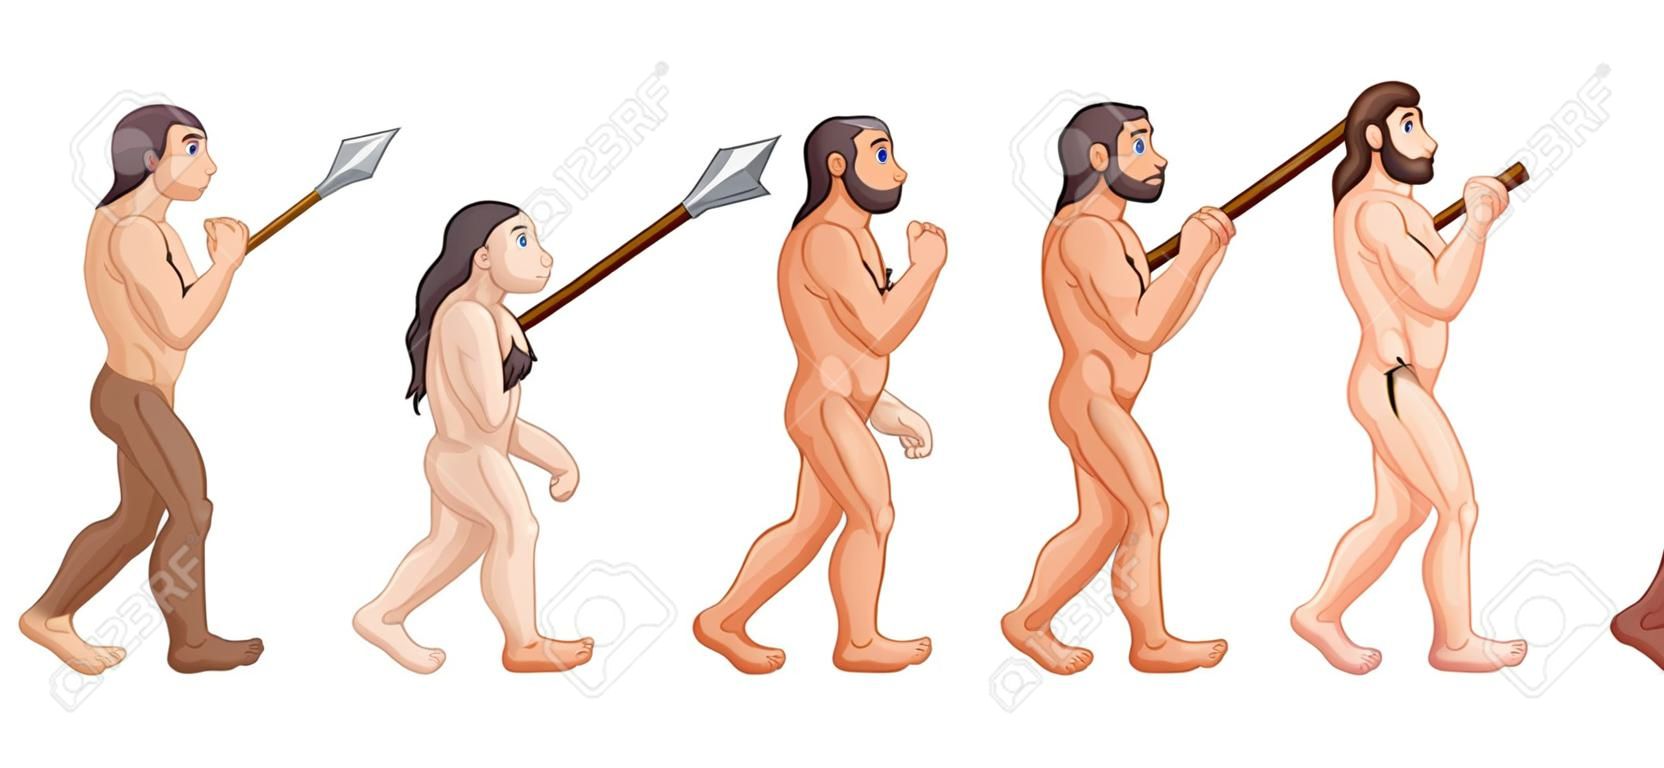 Vector illustratie van cartoon menselijke evolutie